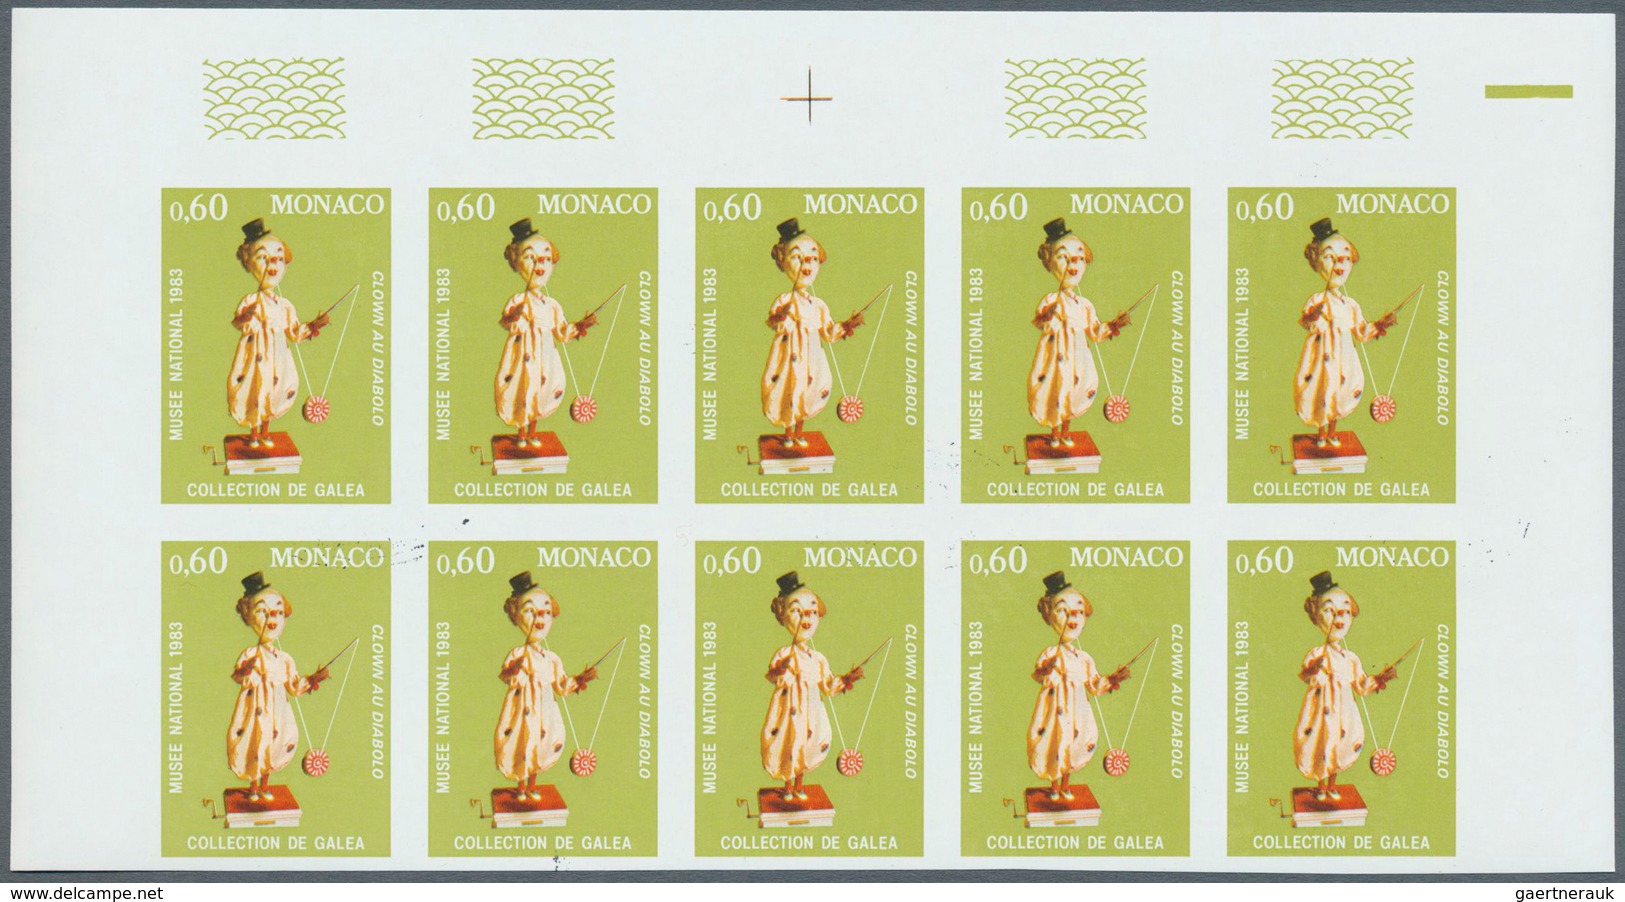 15218 Monaco: 1983, Automaten des 19. Jahrhunderts aus dem Nationalmuseum kompletter Satz von acht Werten